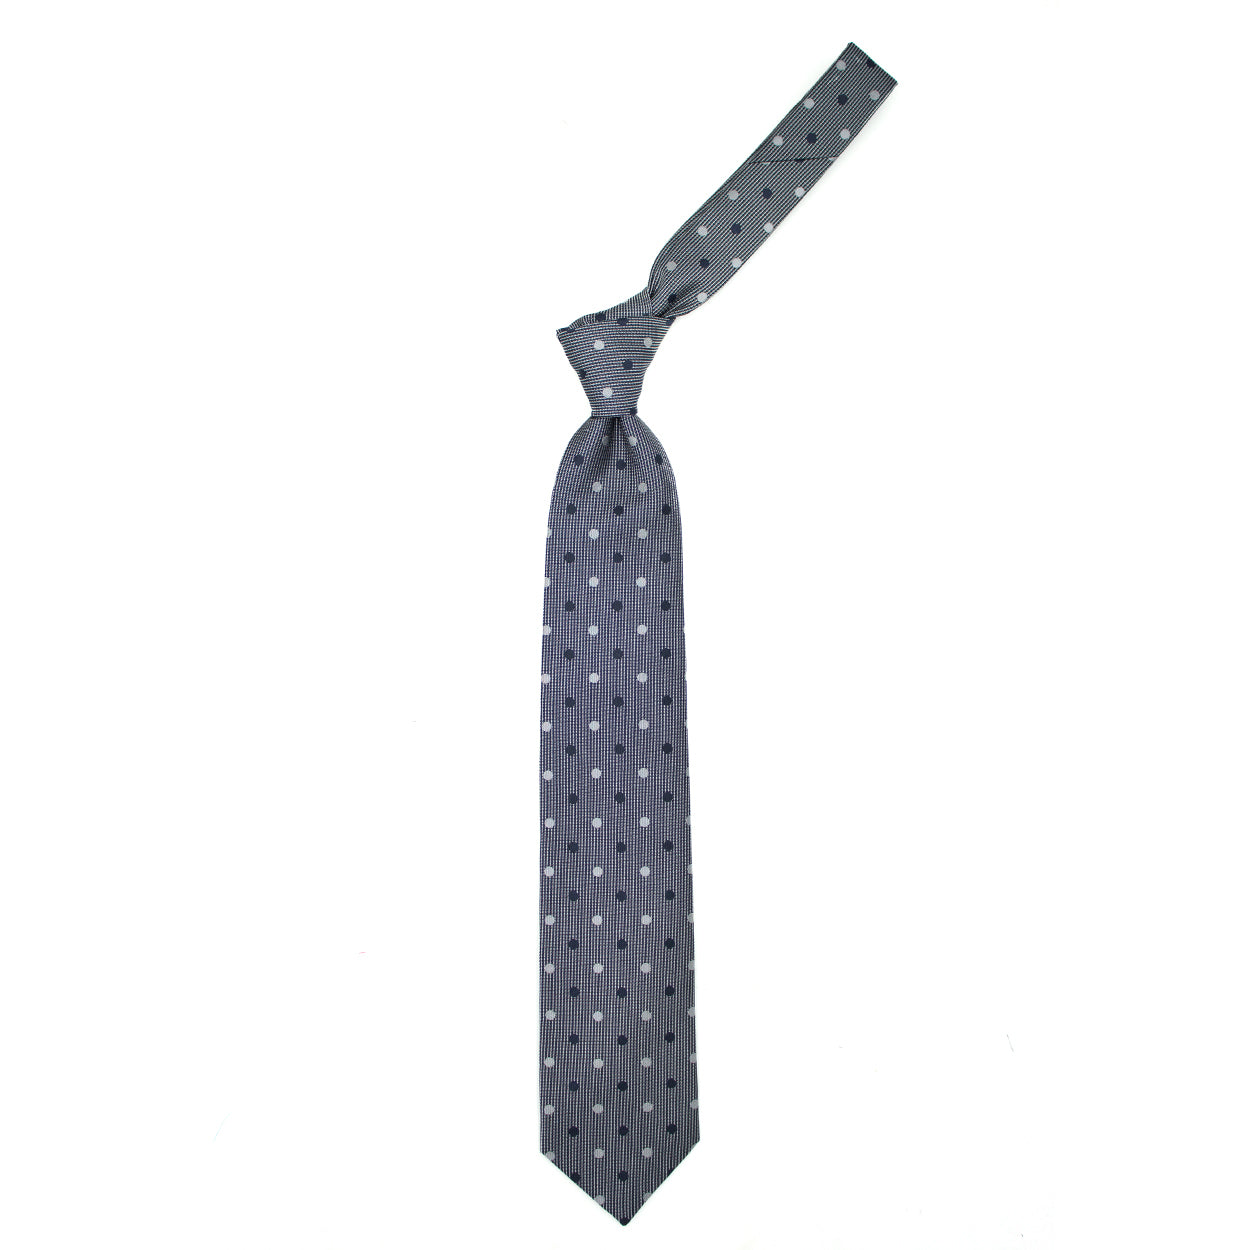 Cravatta tramata blu e grigia con pois blu e grigi